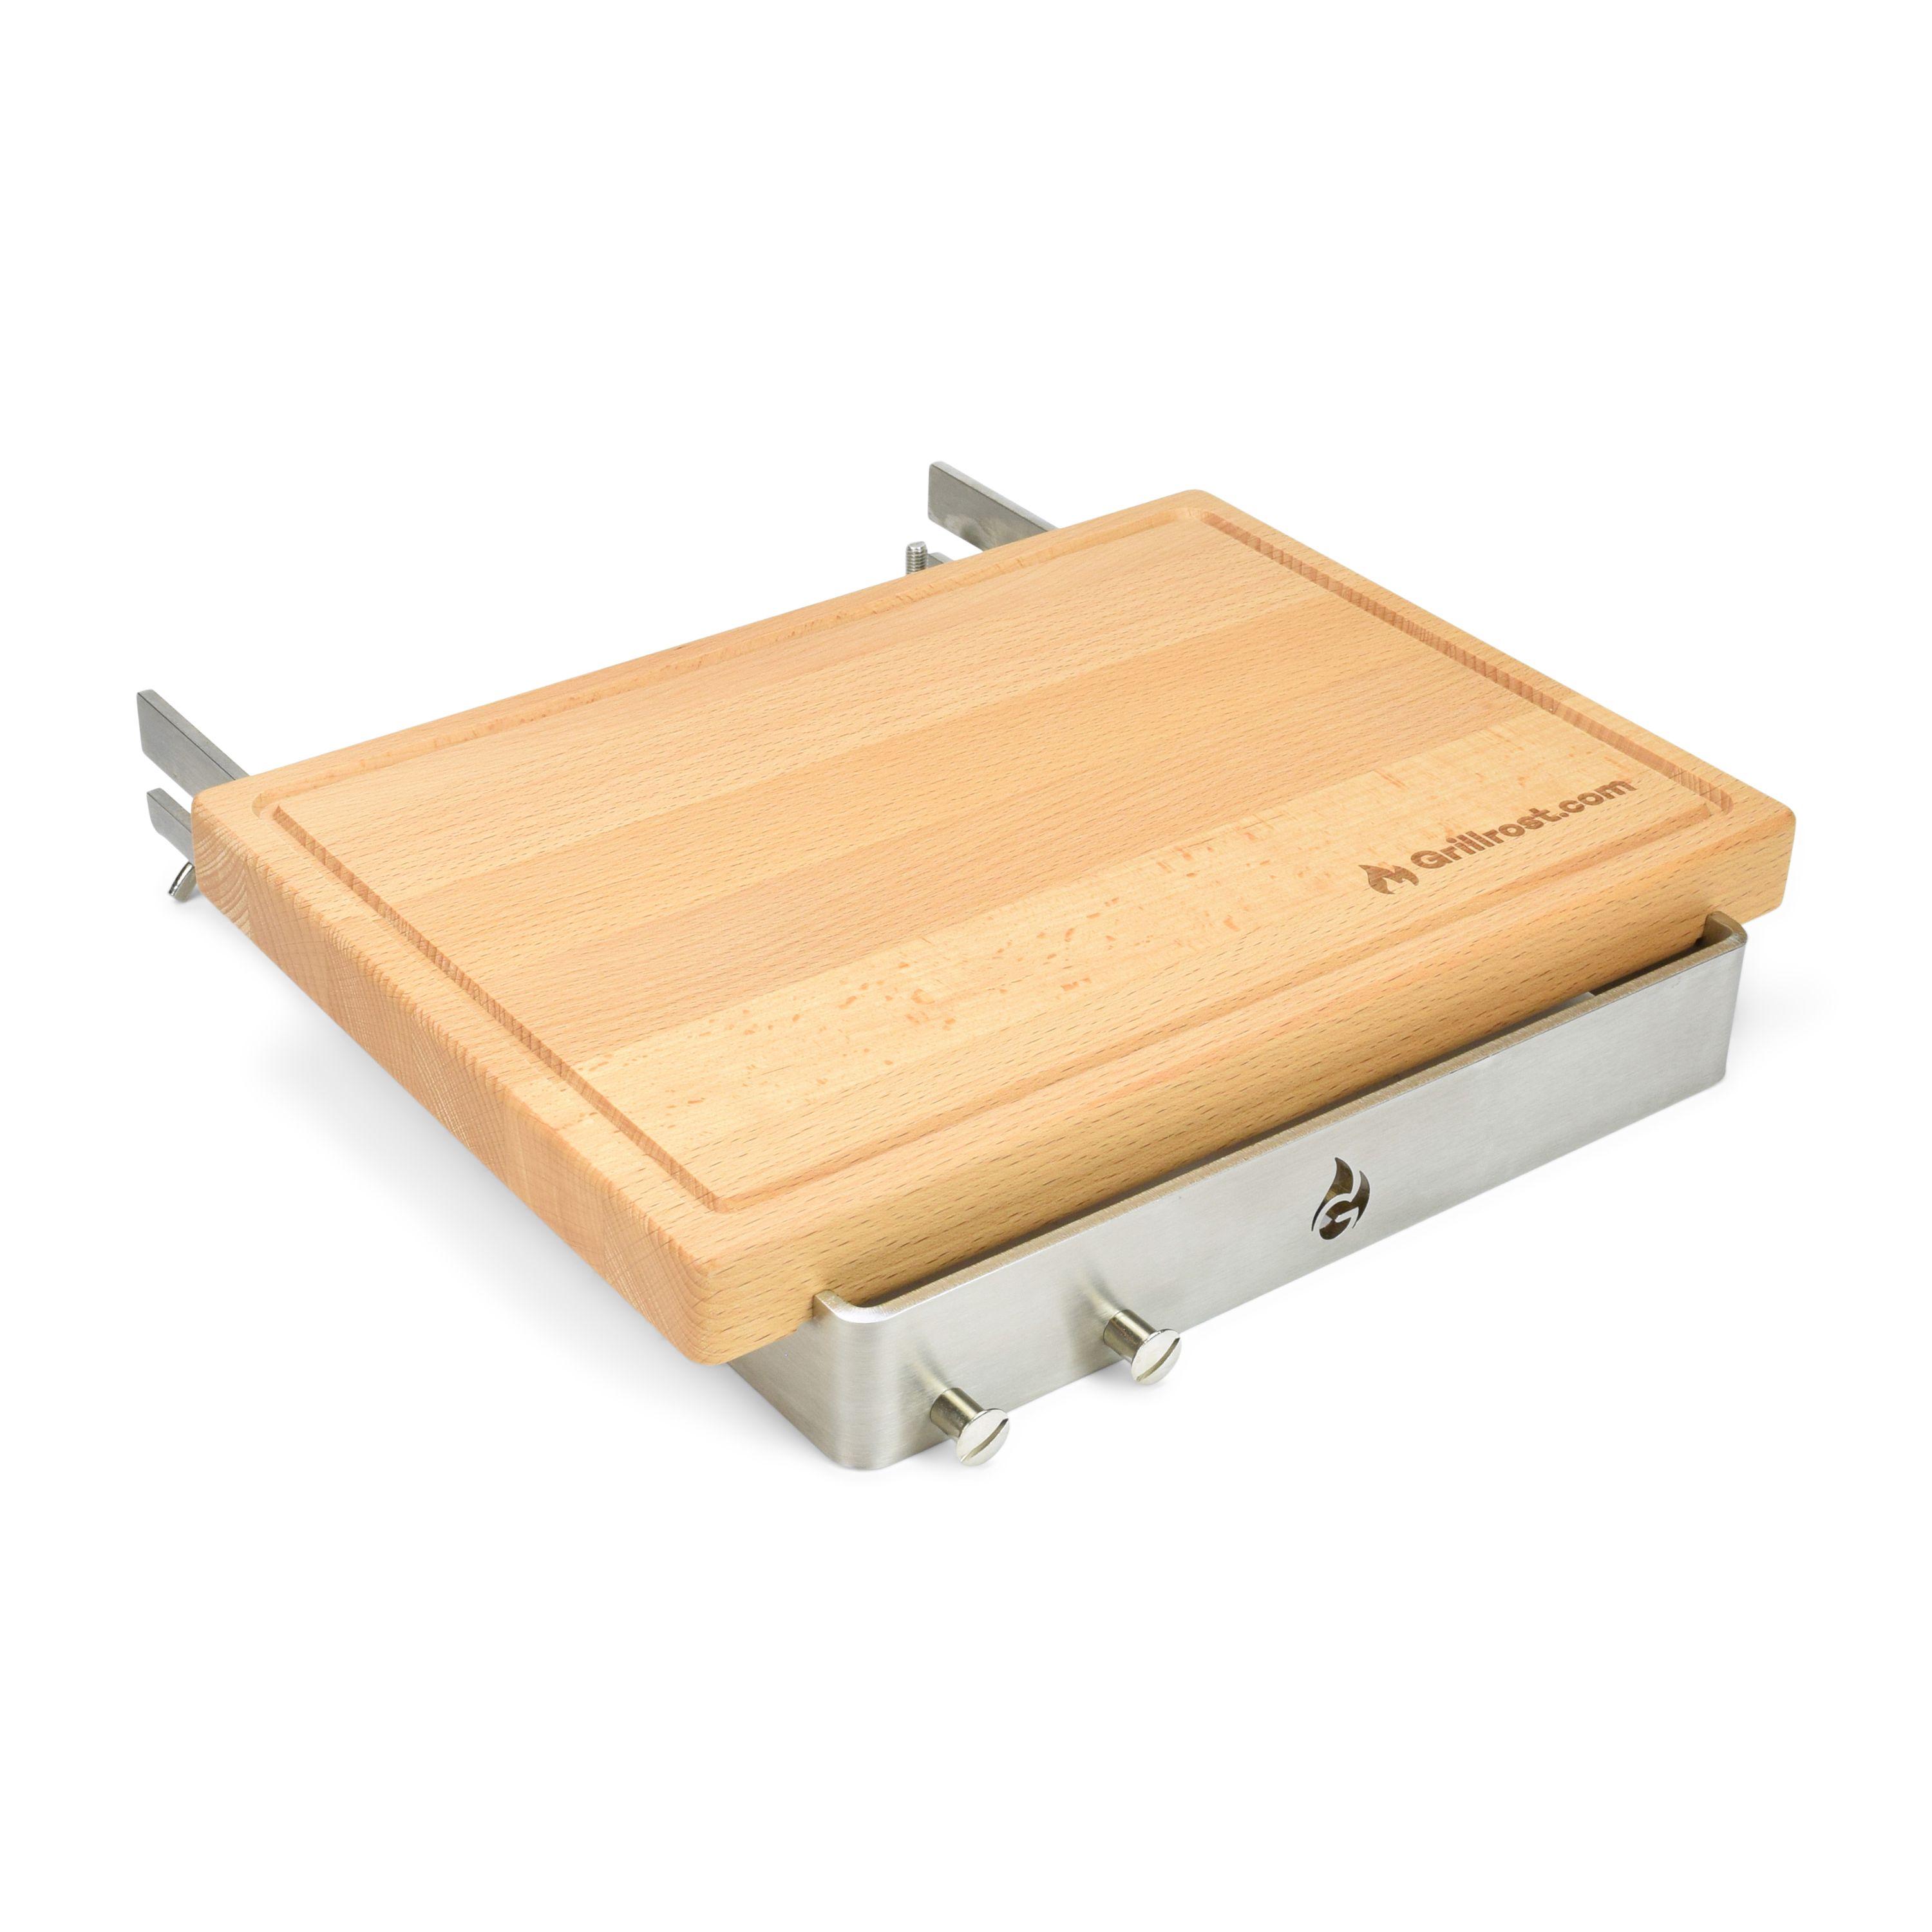 Planche en bois avec support pour plaques de cuisson Planche amovible - plaques de cuisson de 4 à 12 mm d'épaisseur